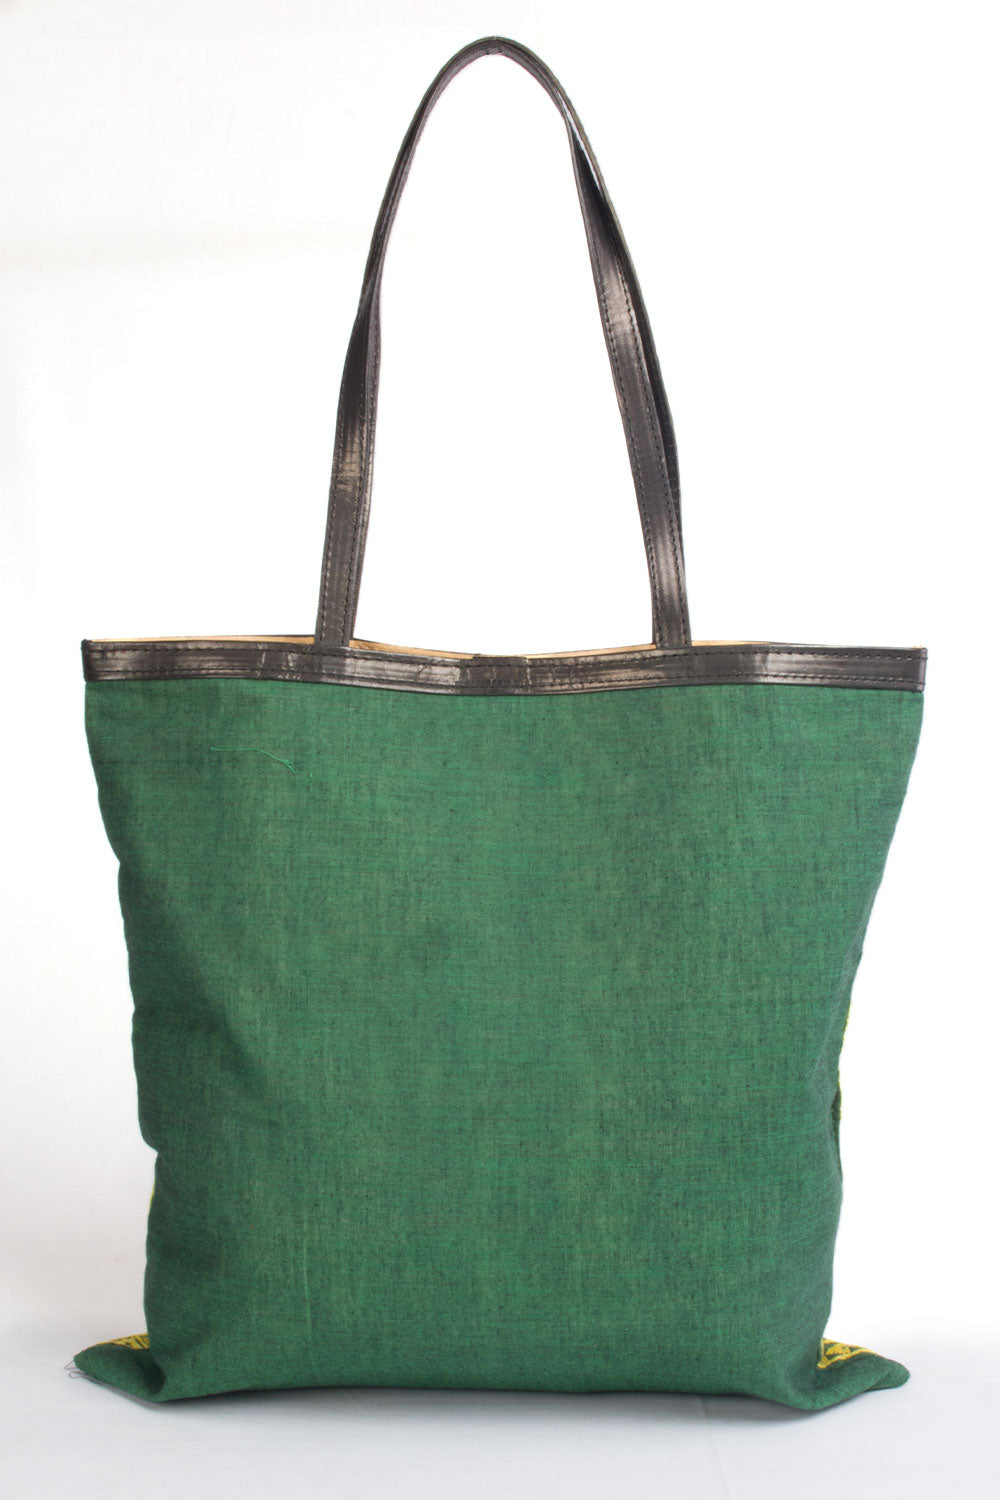 Green Kantha Embroidery Tote Bag - Avishya